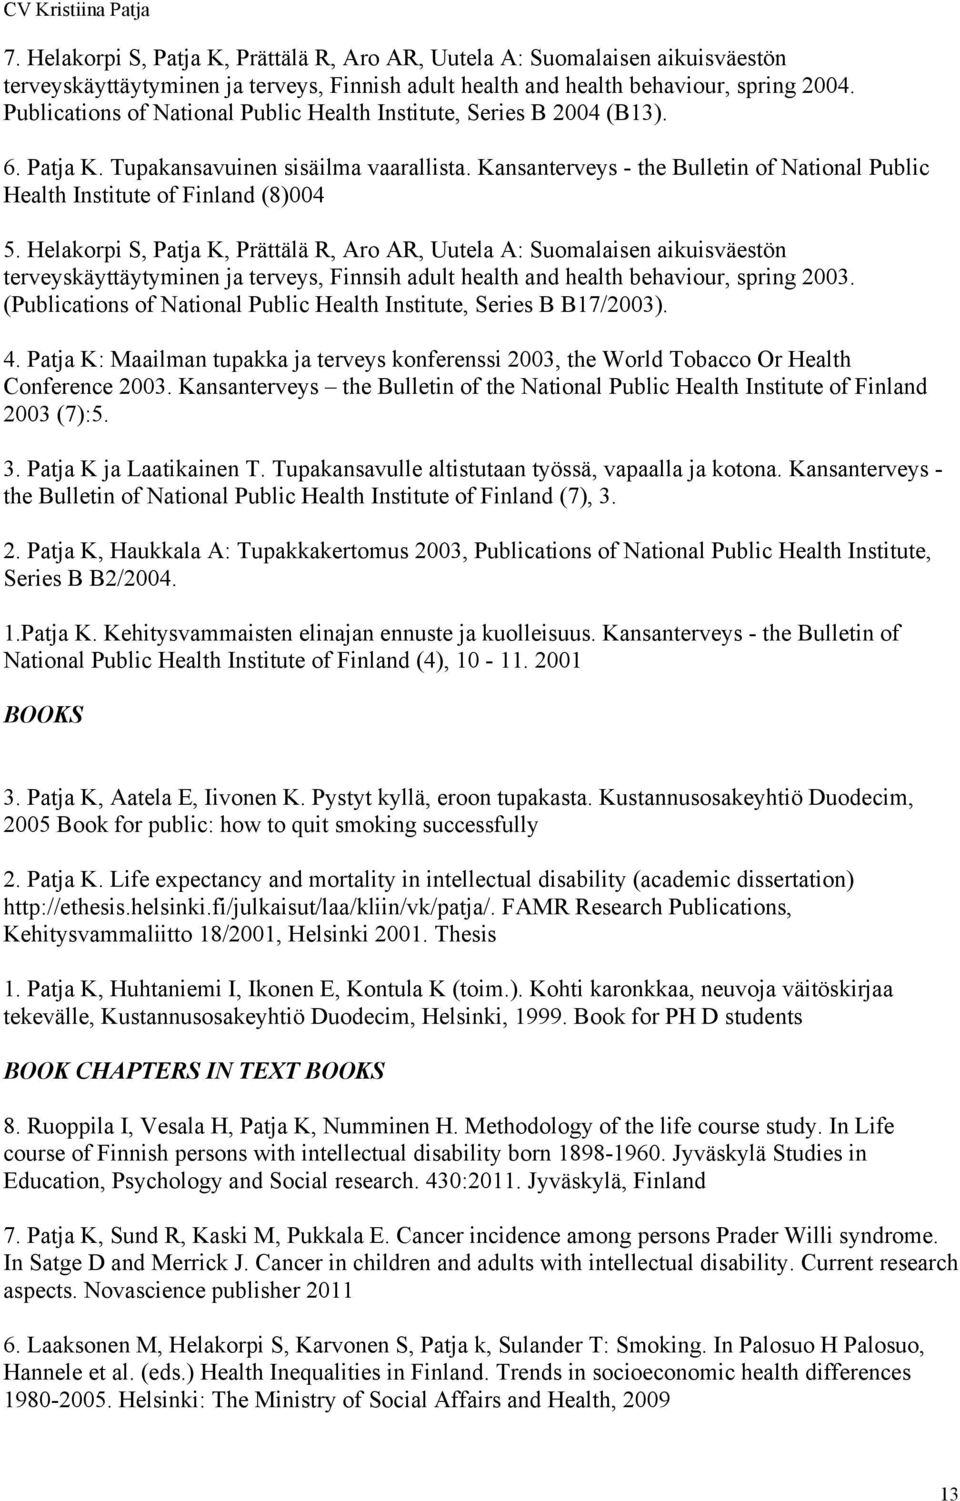 Kansanterveys - the Bulletin of National Public Health Institute of Finland (8)004 5.